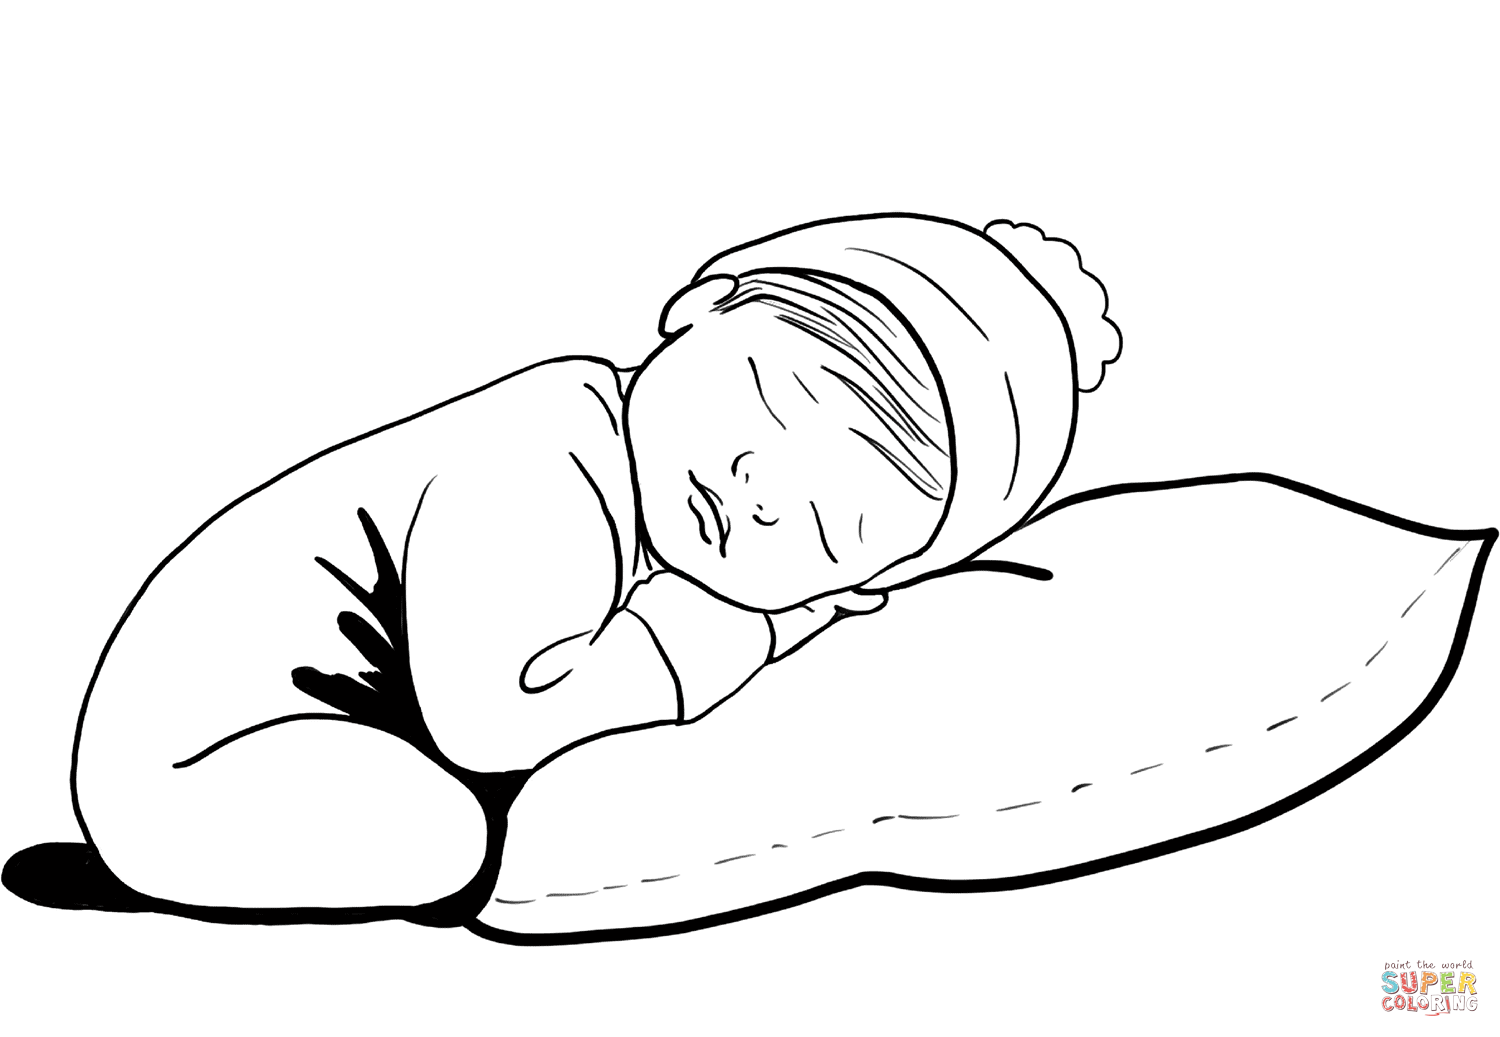 Dibujo de lindo bebe durmiendo para colorear | Dibujos para colorear  imprimir gratis